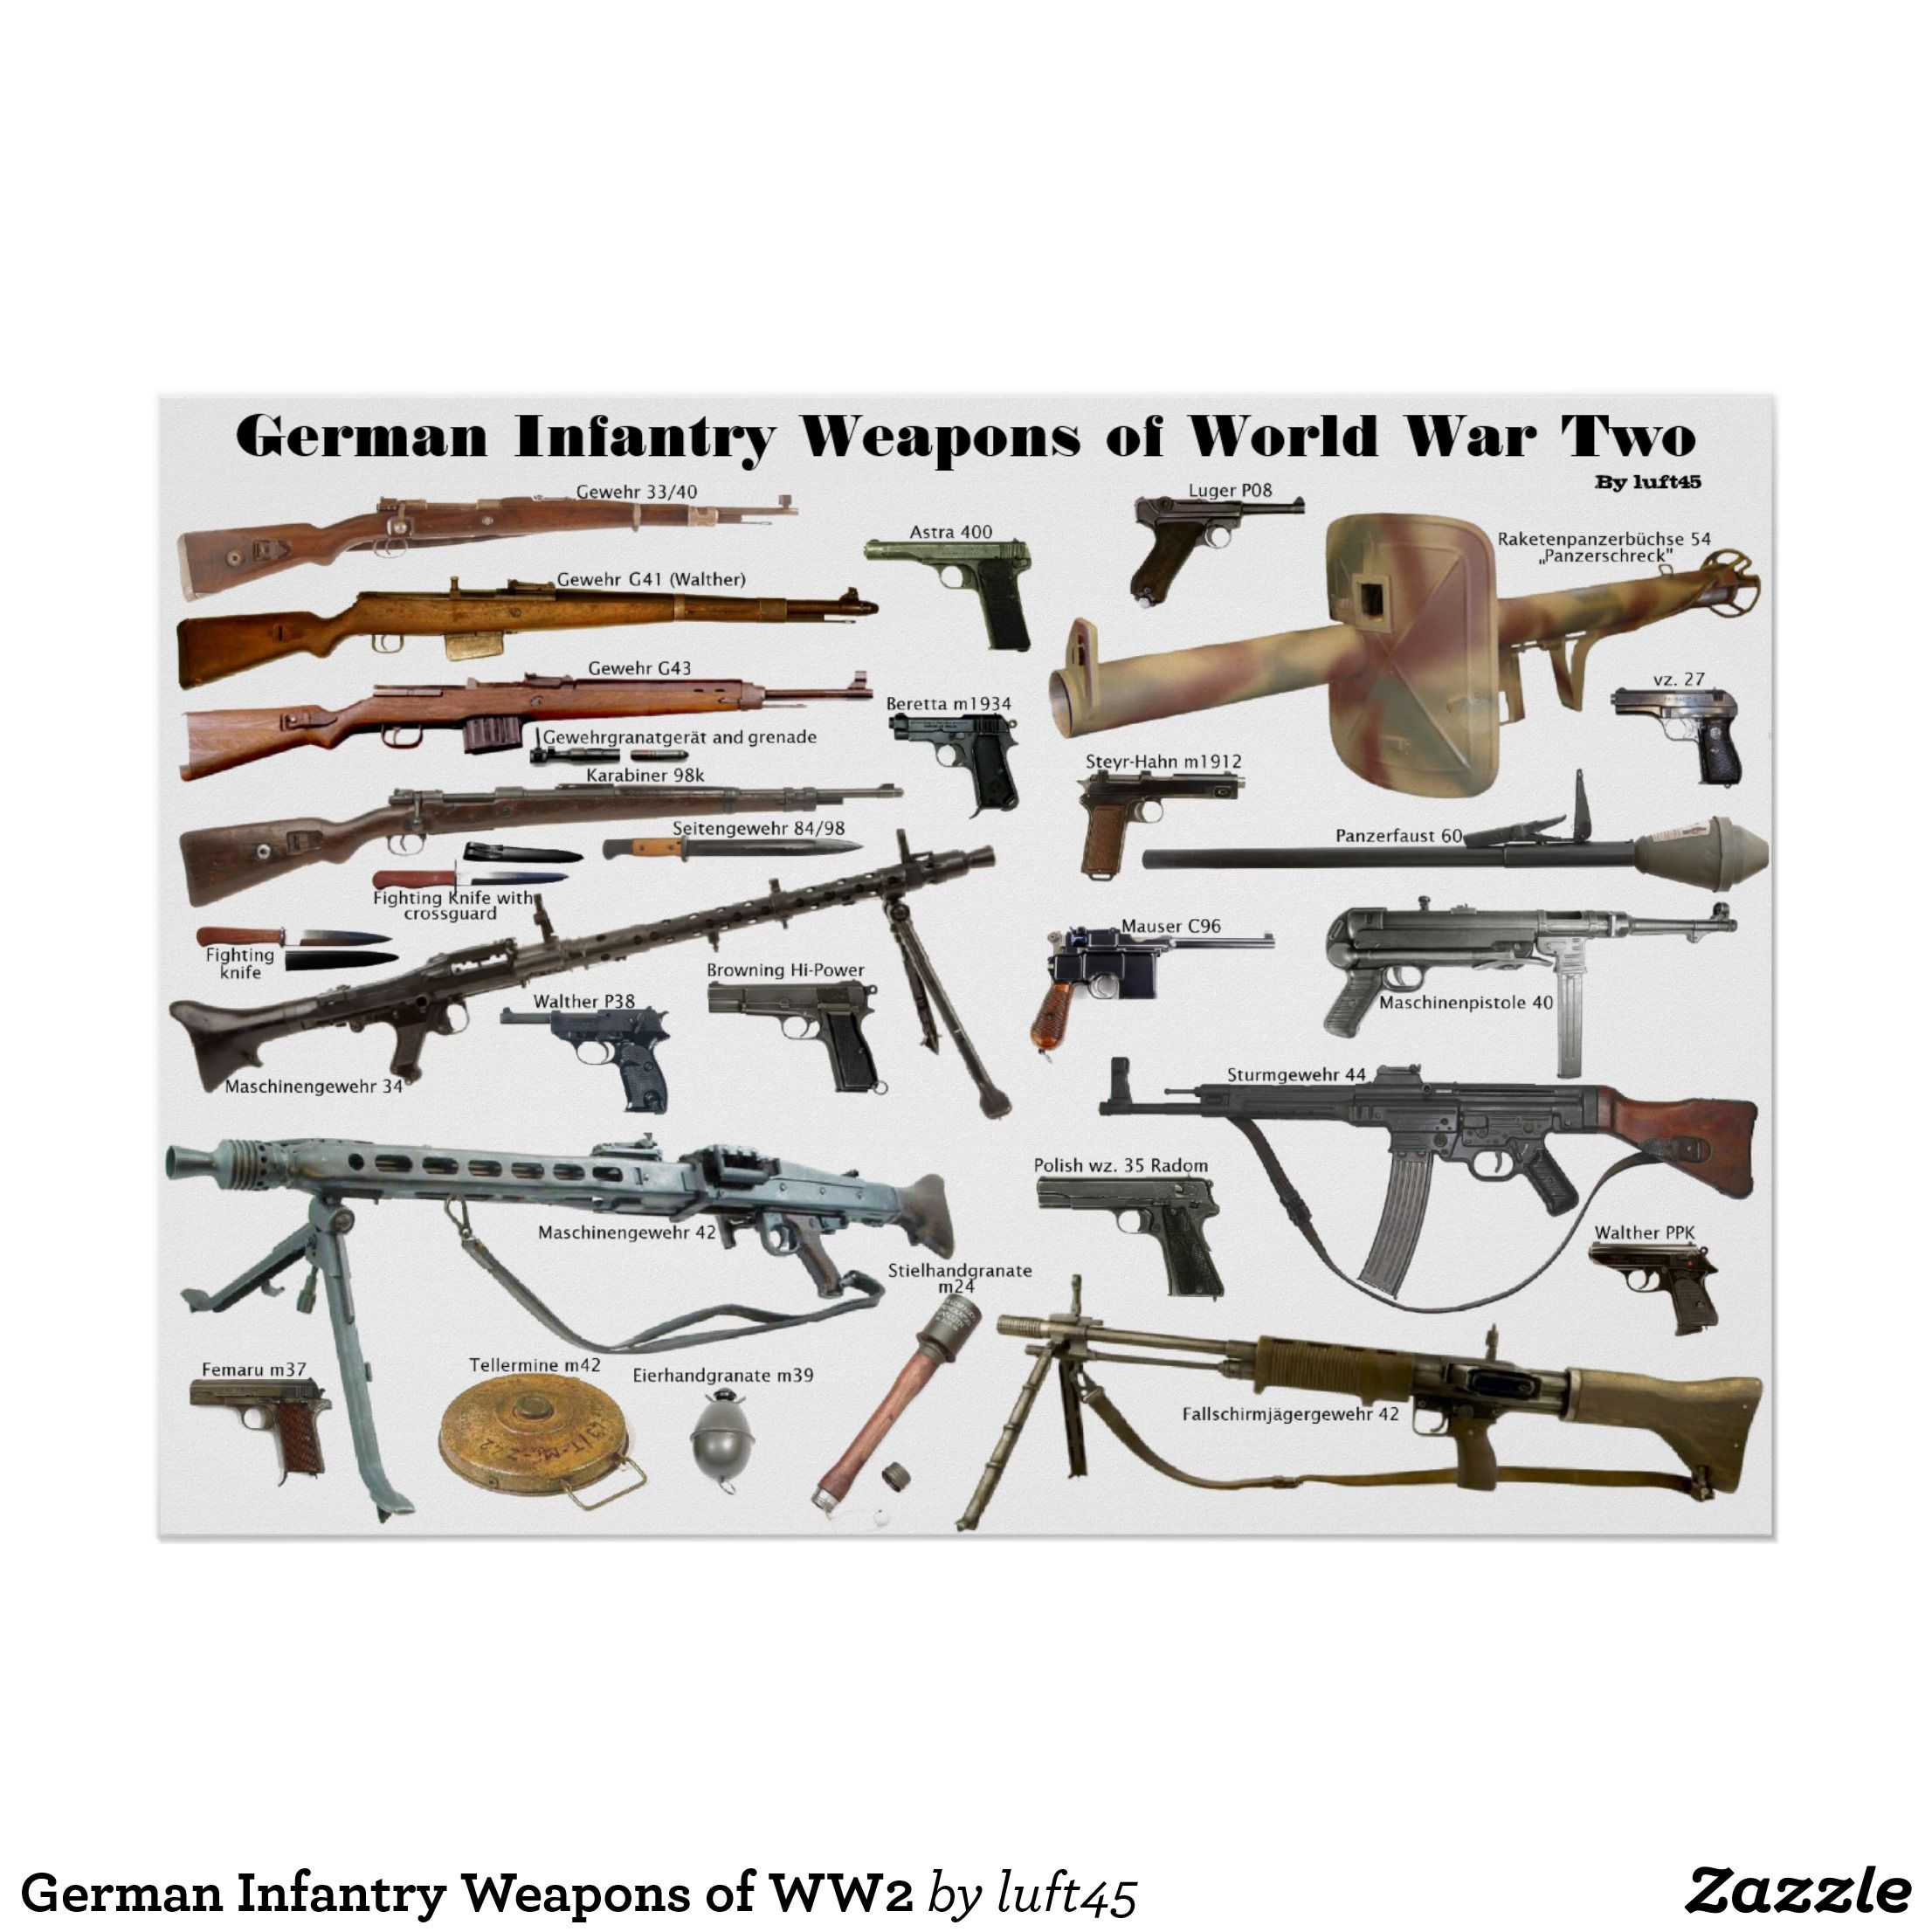 Оружие вермахта второй. Оружие Германии во второй мировой войне пулемёт. Немецкое оружие второй мировой войны Германии. Стрелковое оружие второй мировой войны немецкой армии. Стрелковое оружие Германии периода второй мировой войны.